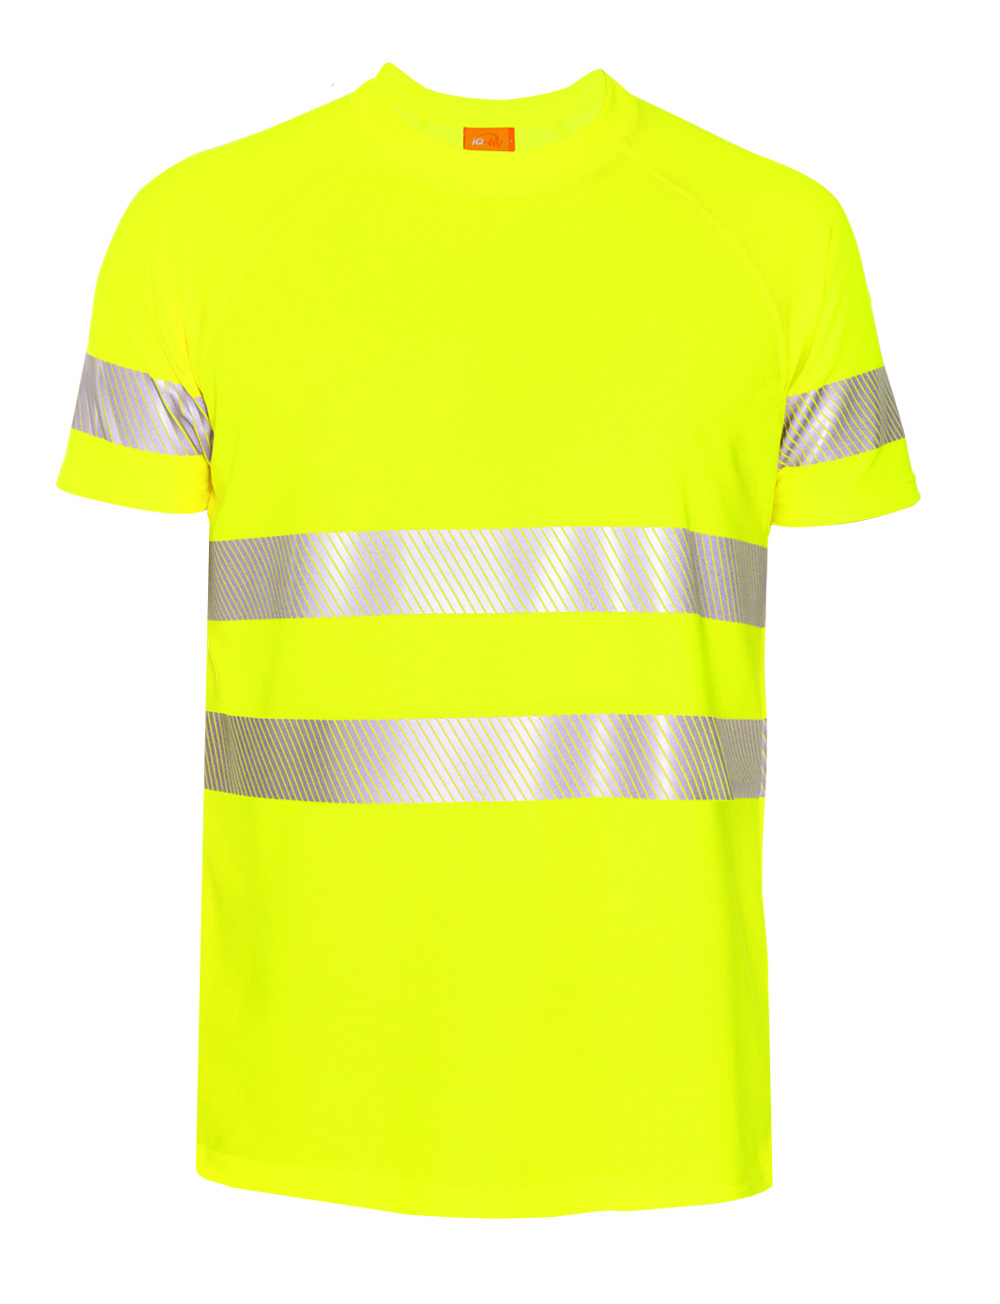 hivi shirt yellow